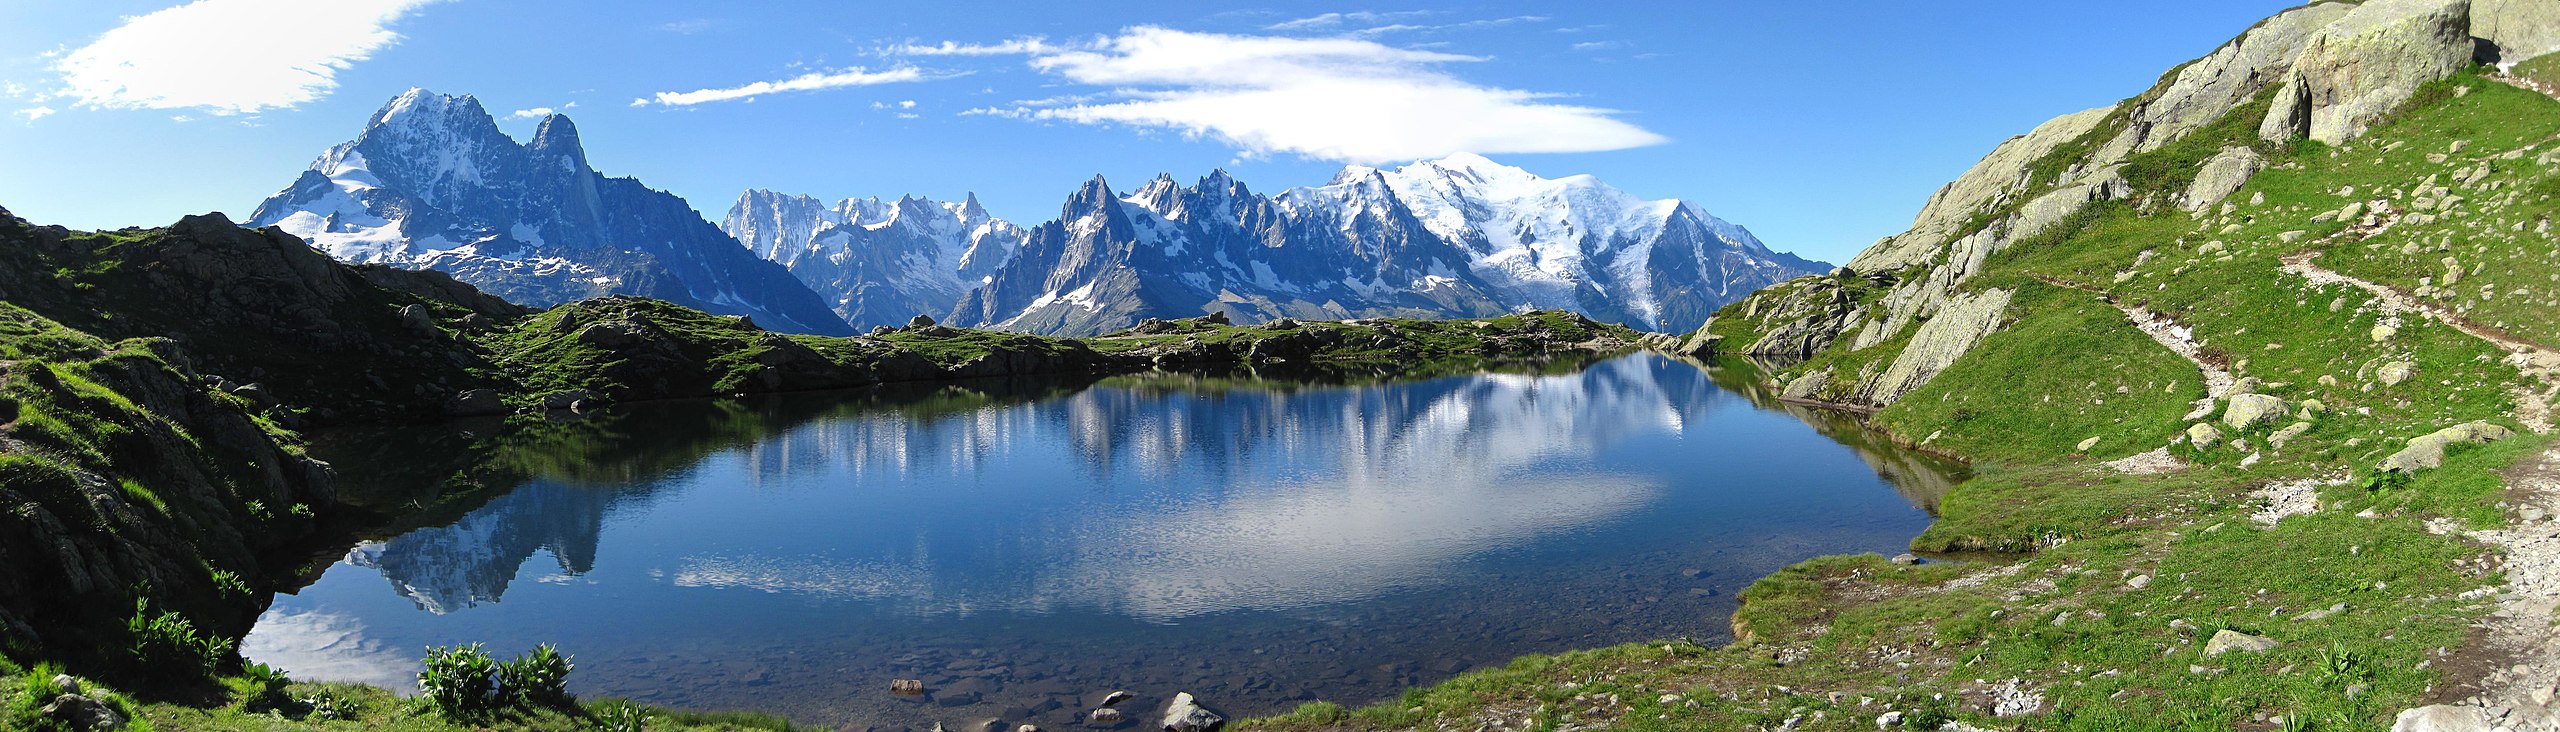 European Alps Close Due to Summer Heatwave